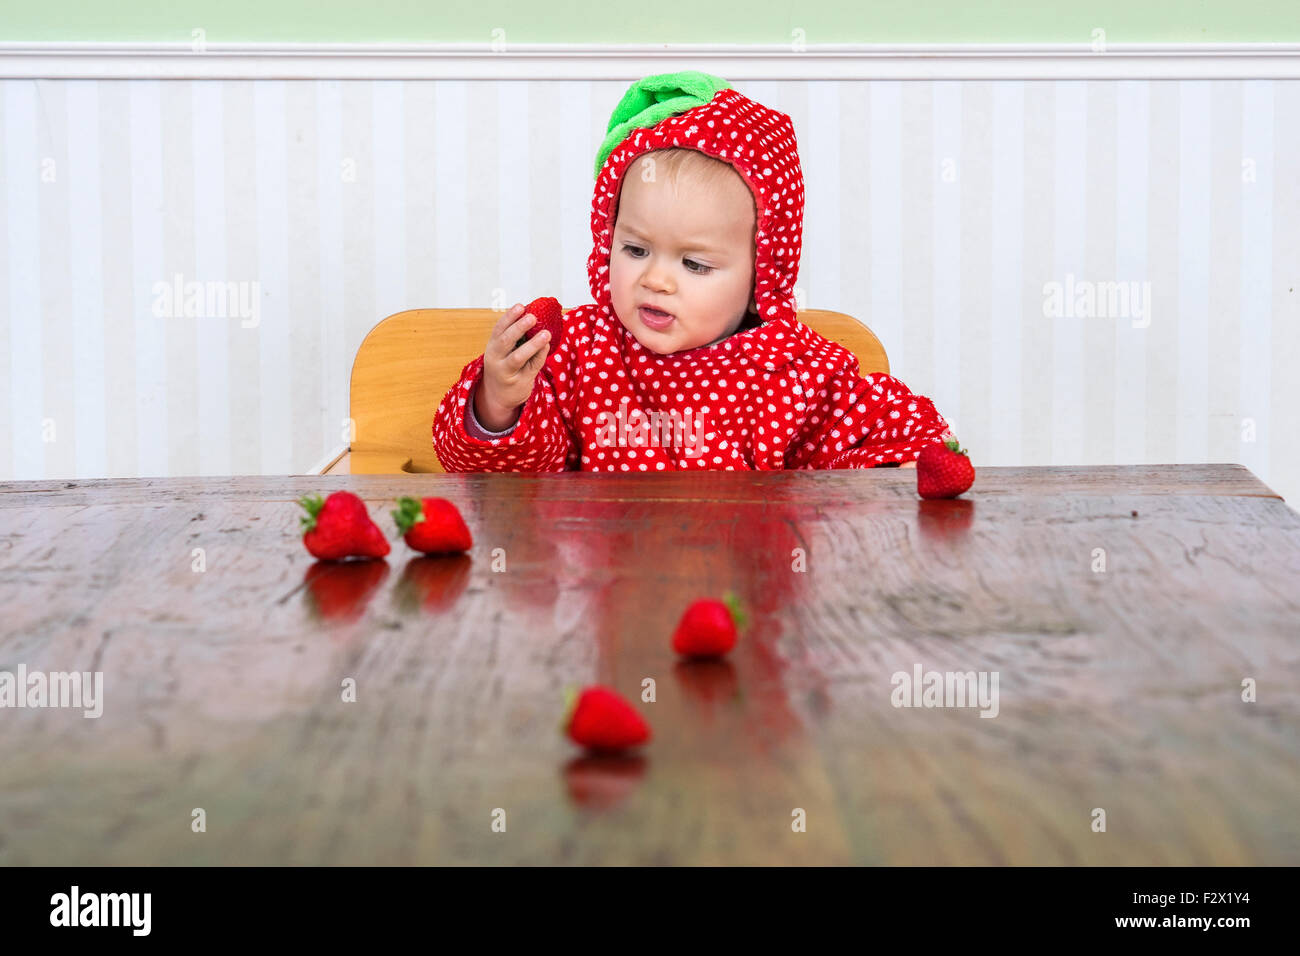 Lindo bebé en baya palo comer fresas Foto de stock